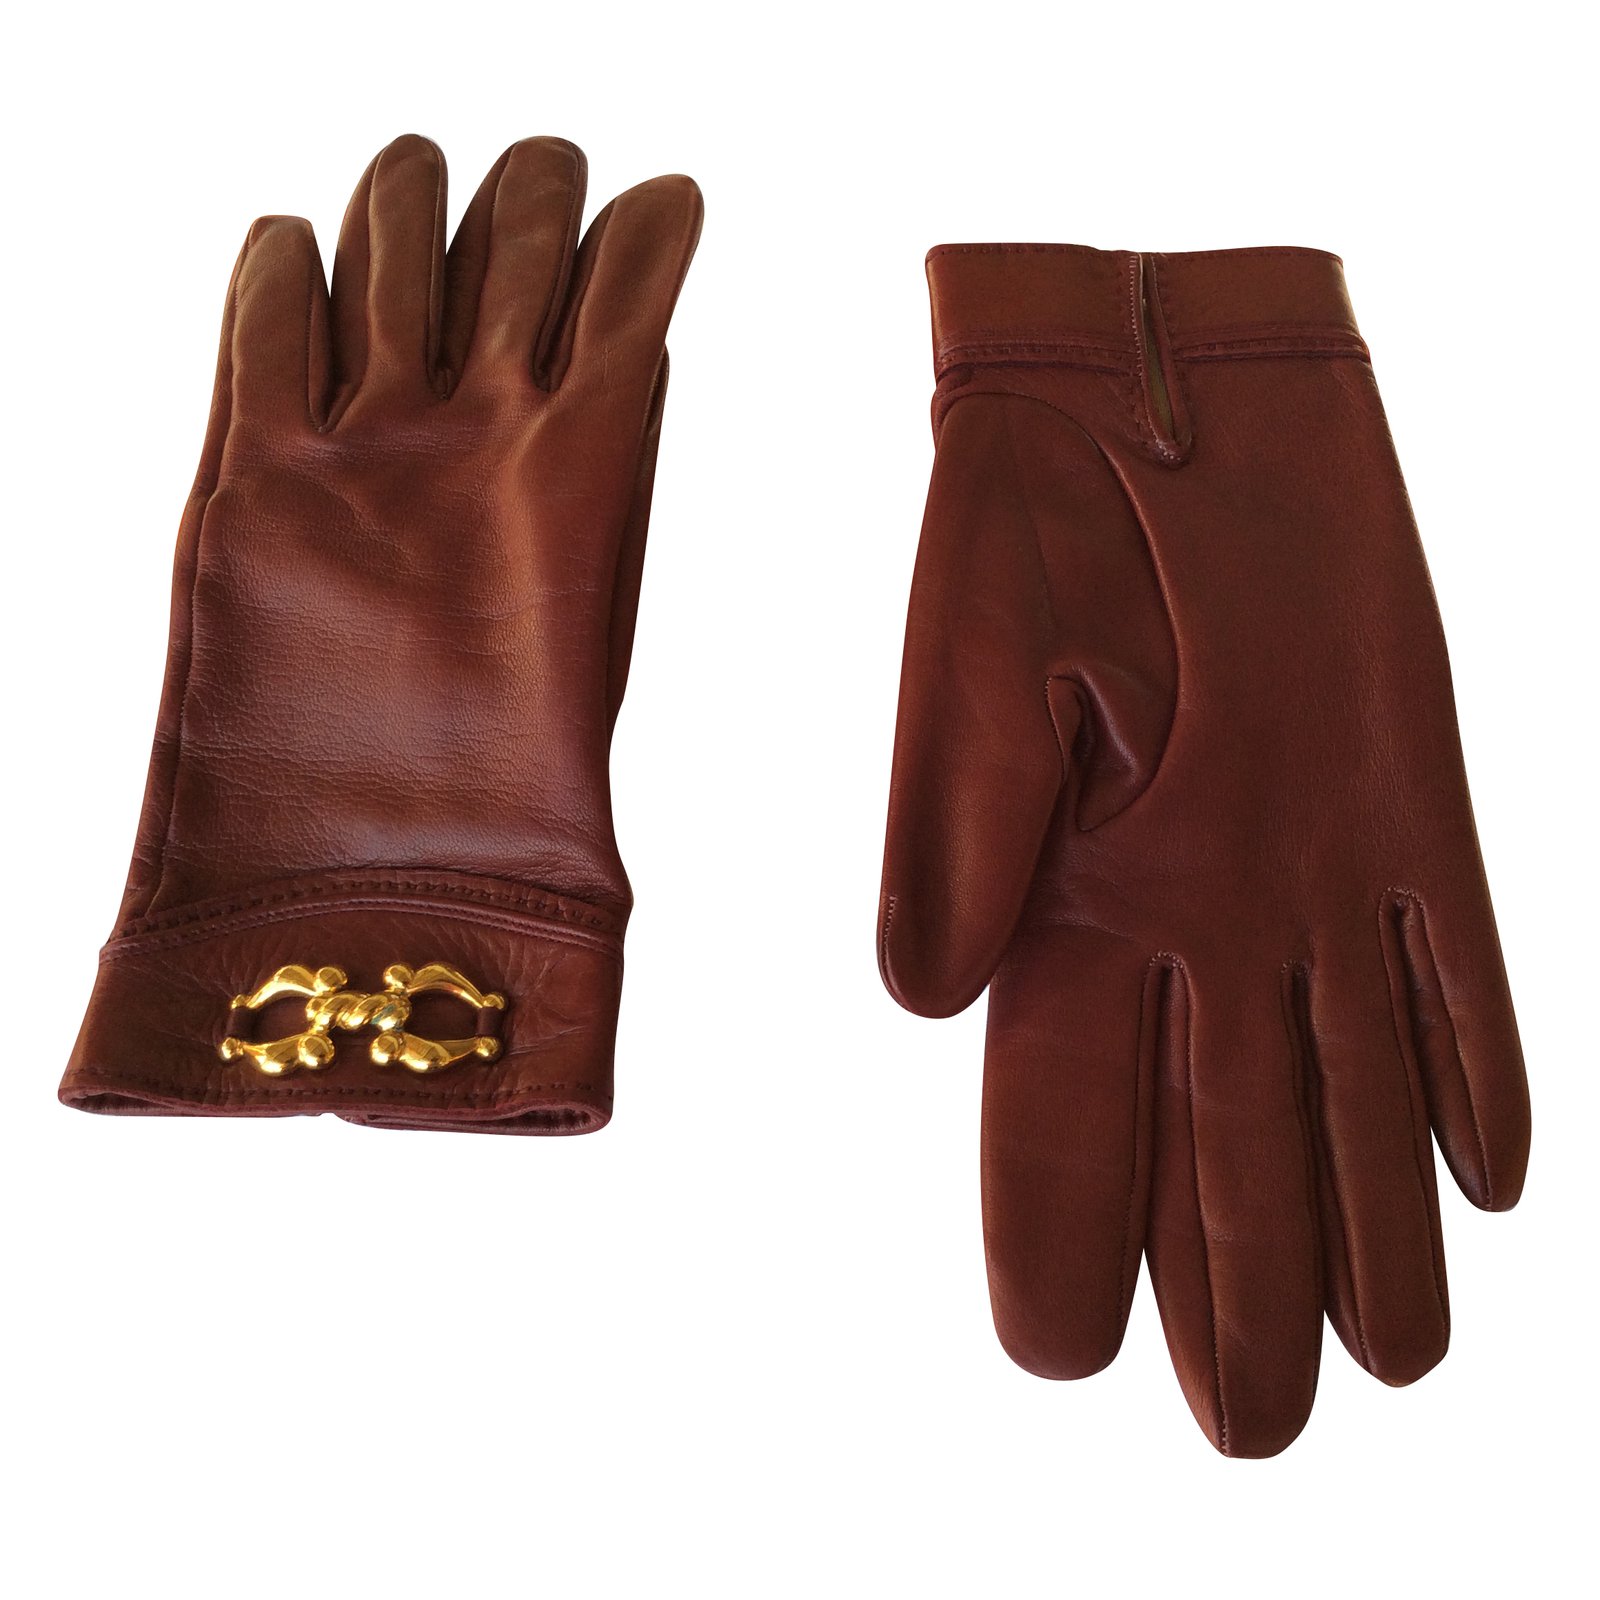 Hermes gloves